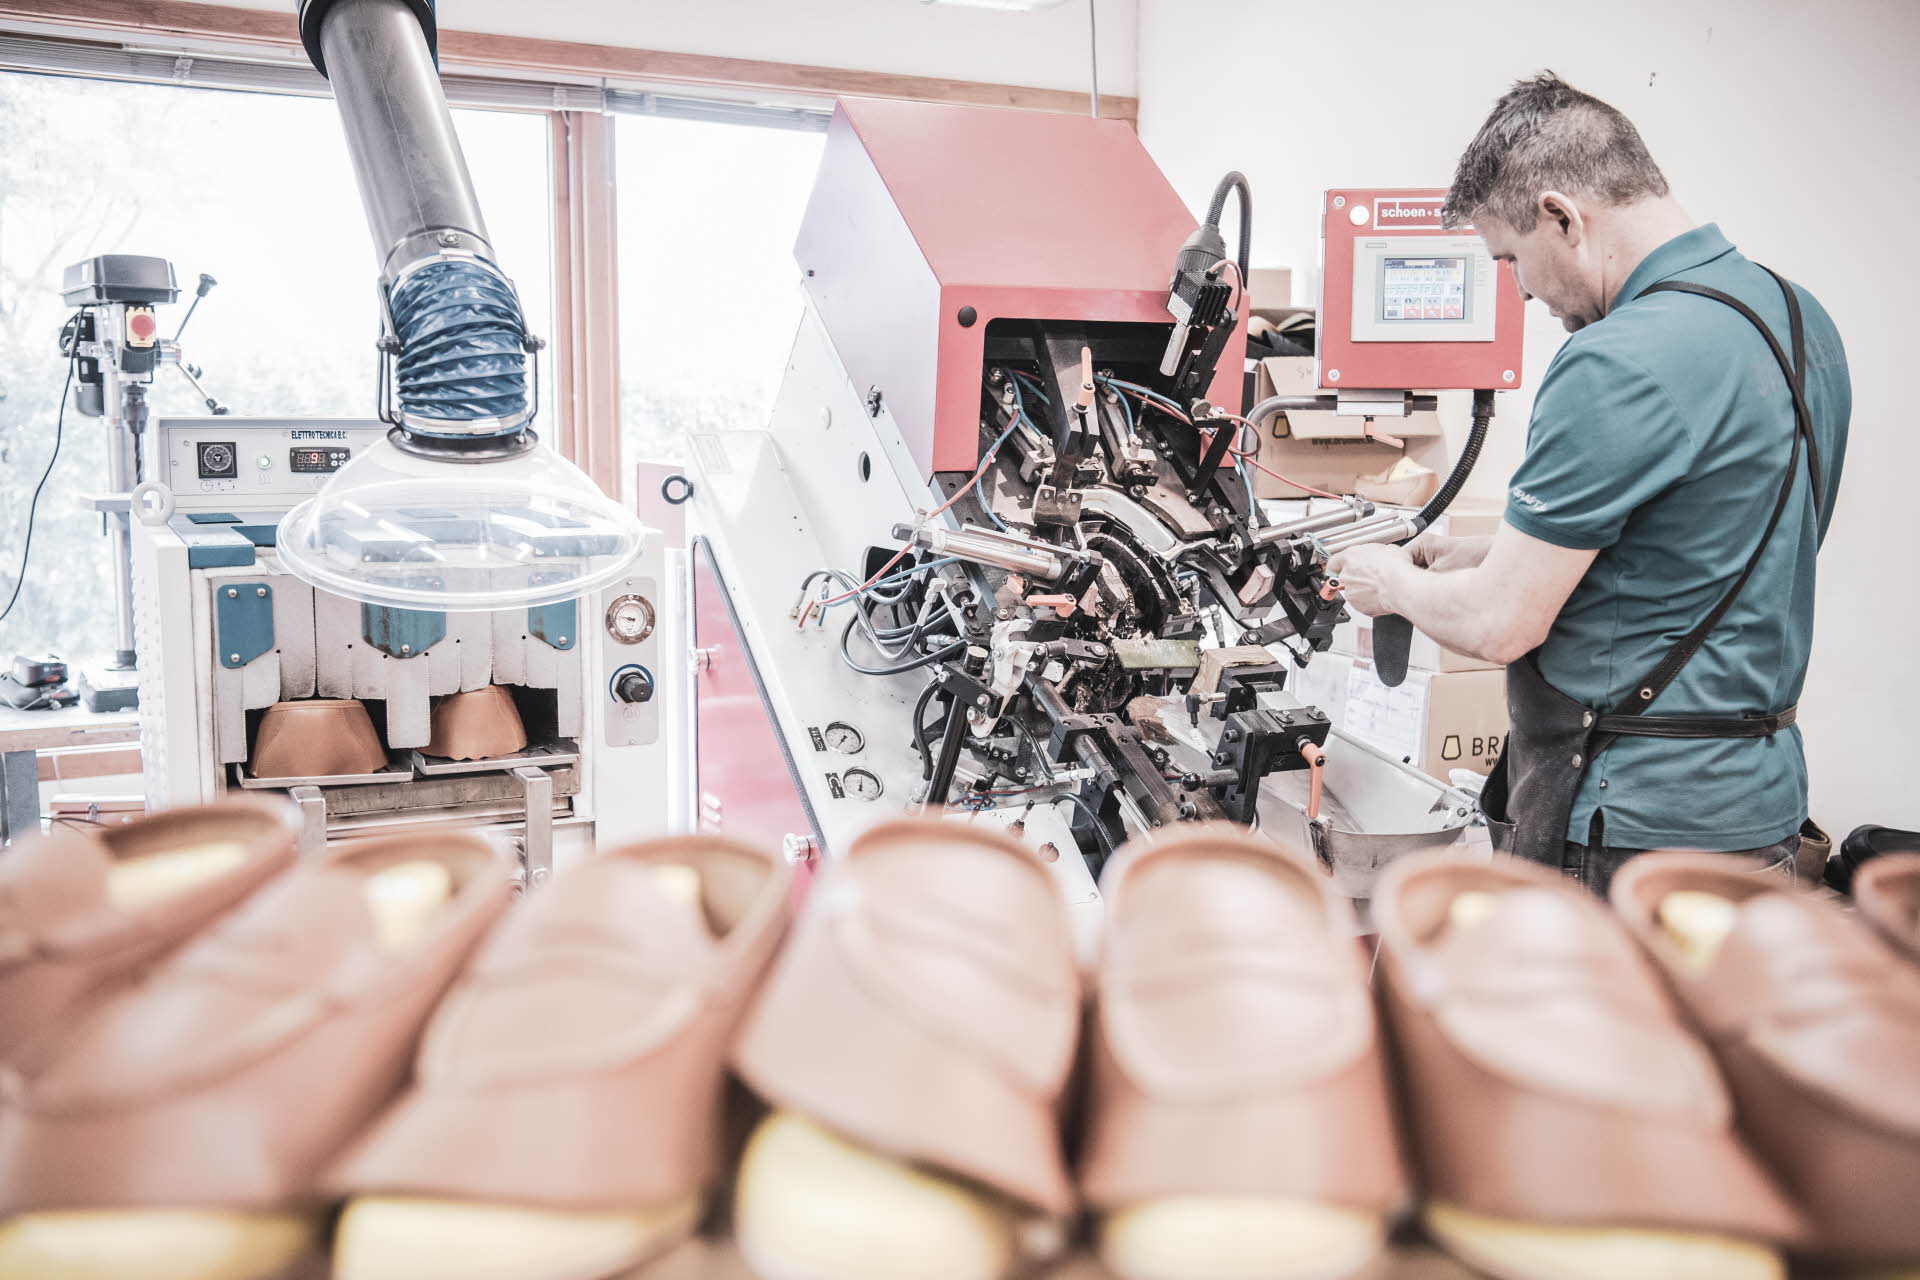 Ein Schuhmacher arbeitet an einer Maschine hinter einem Regal mit unfertigen Aurland-Schuhen.